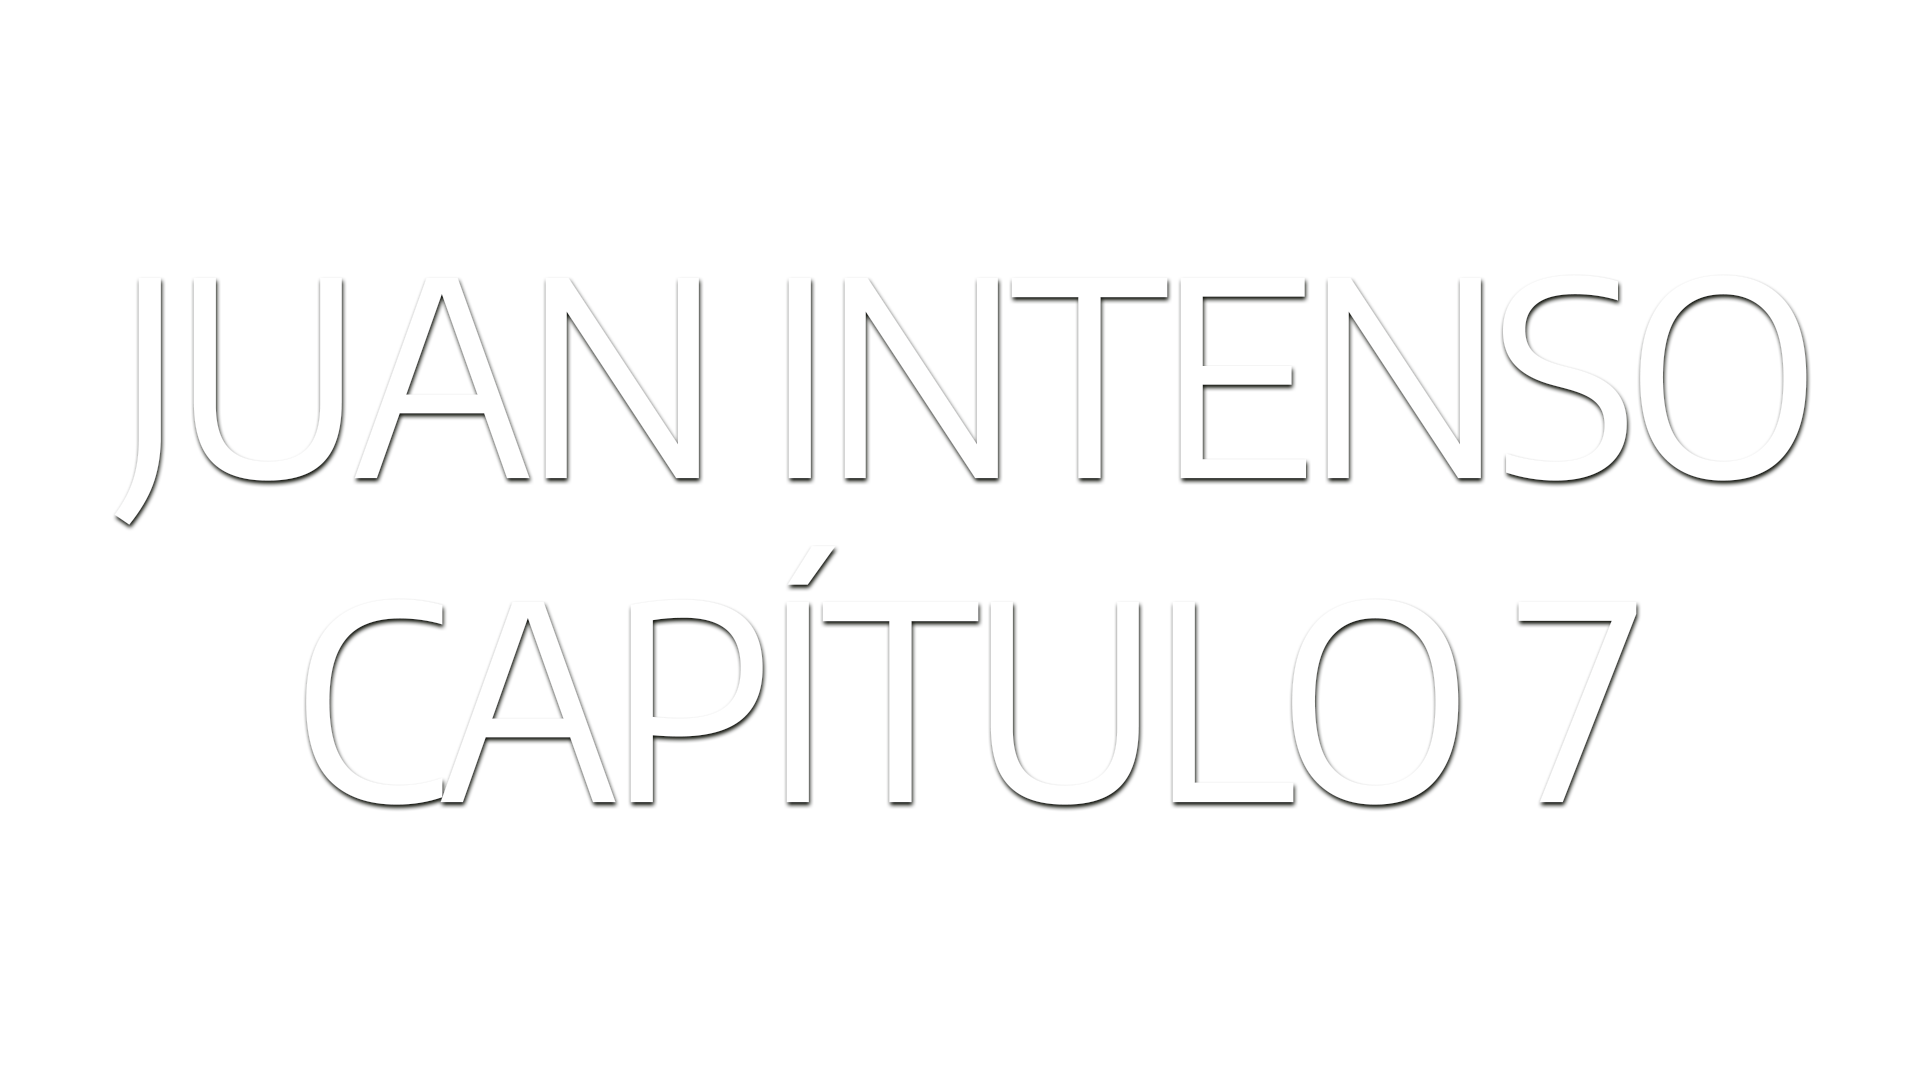 Juan Intenso – Ep 7